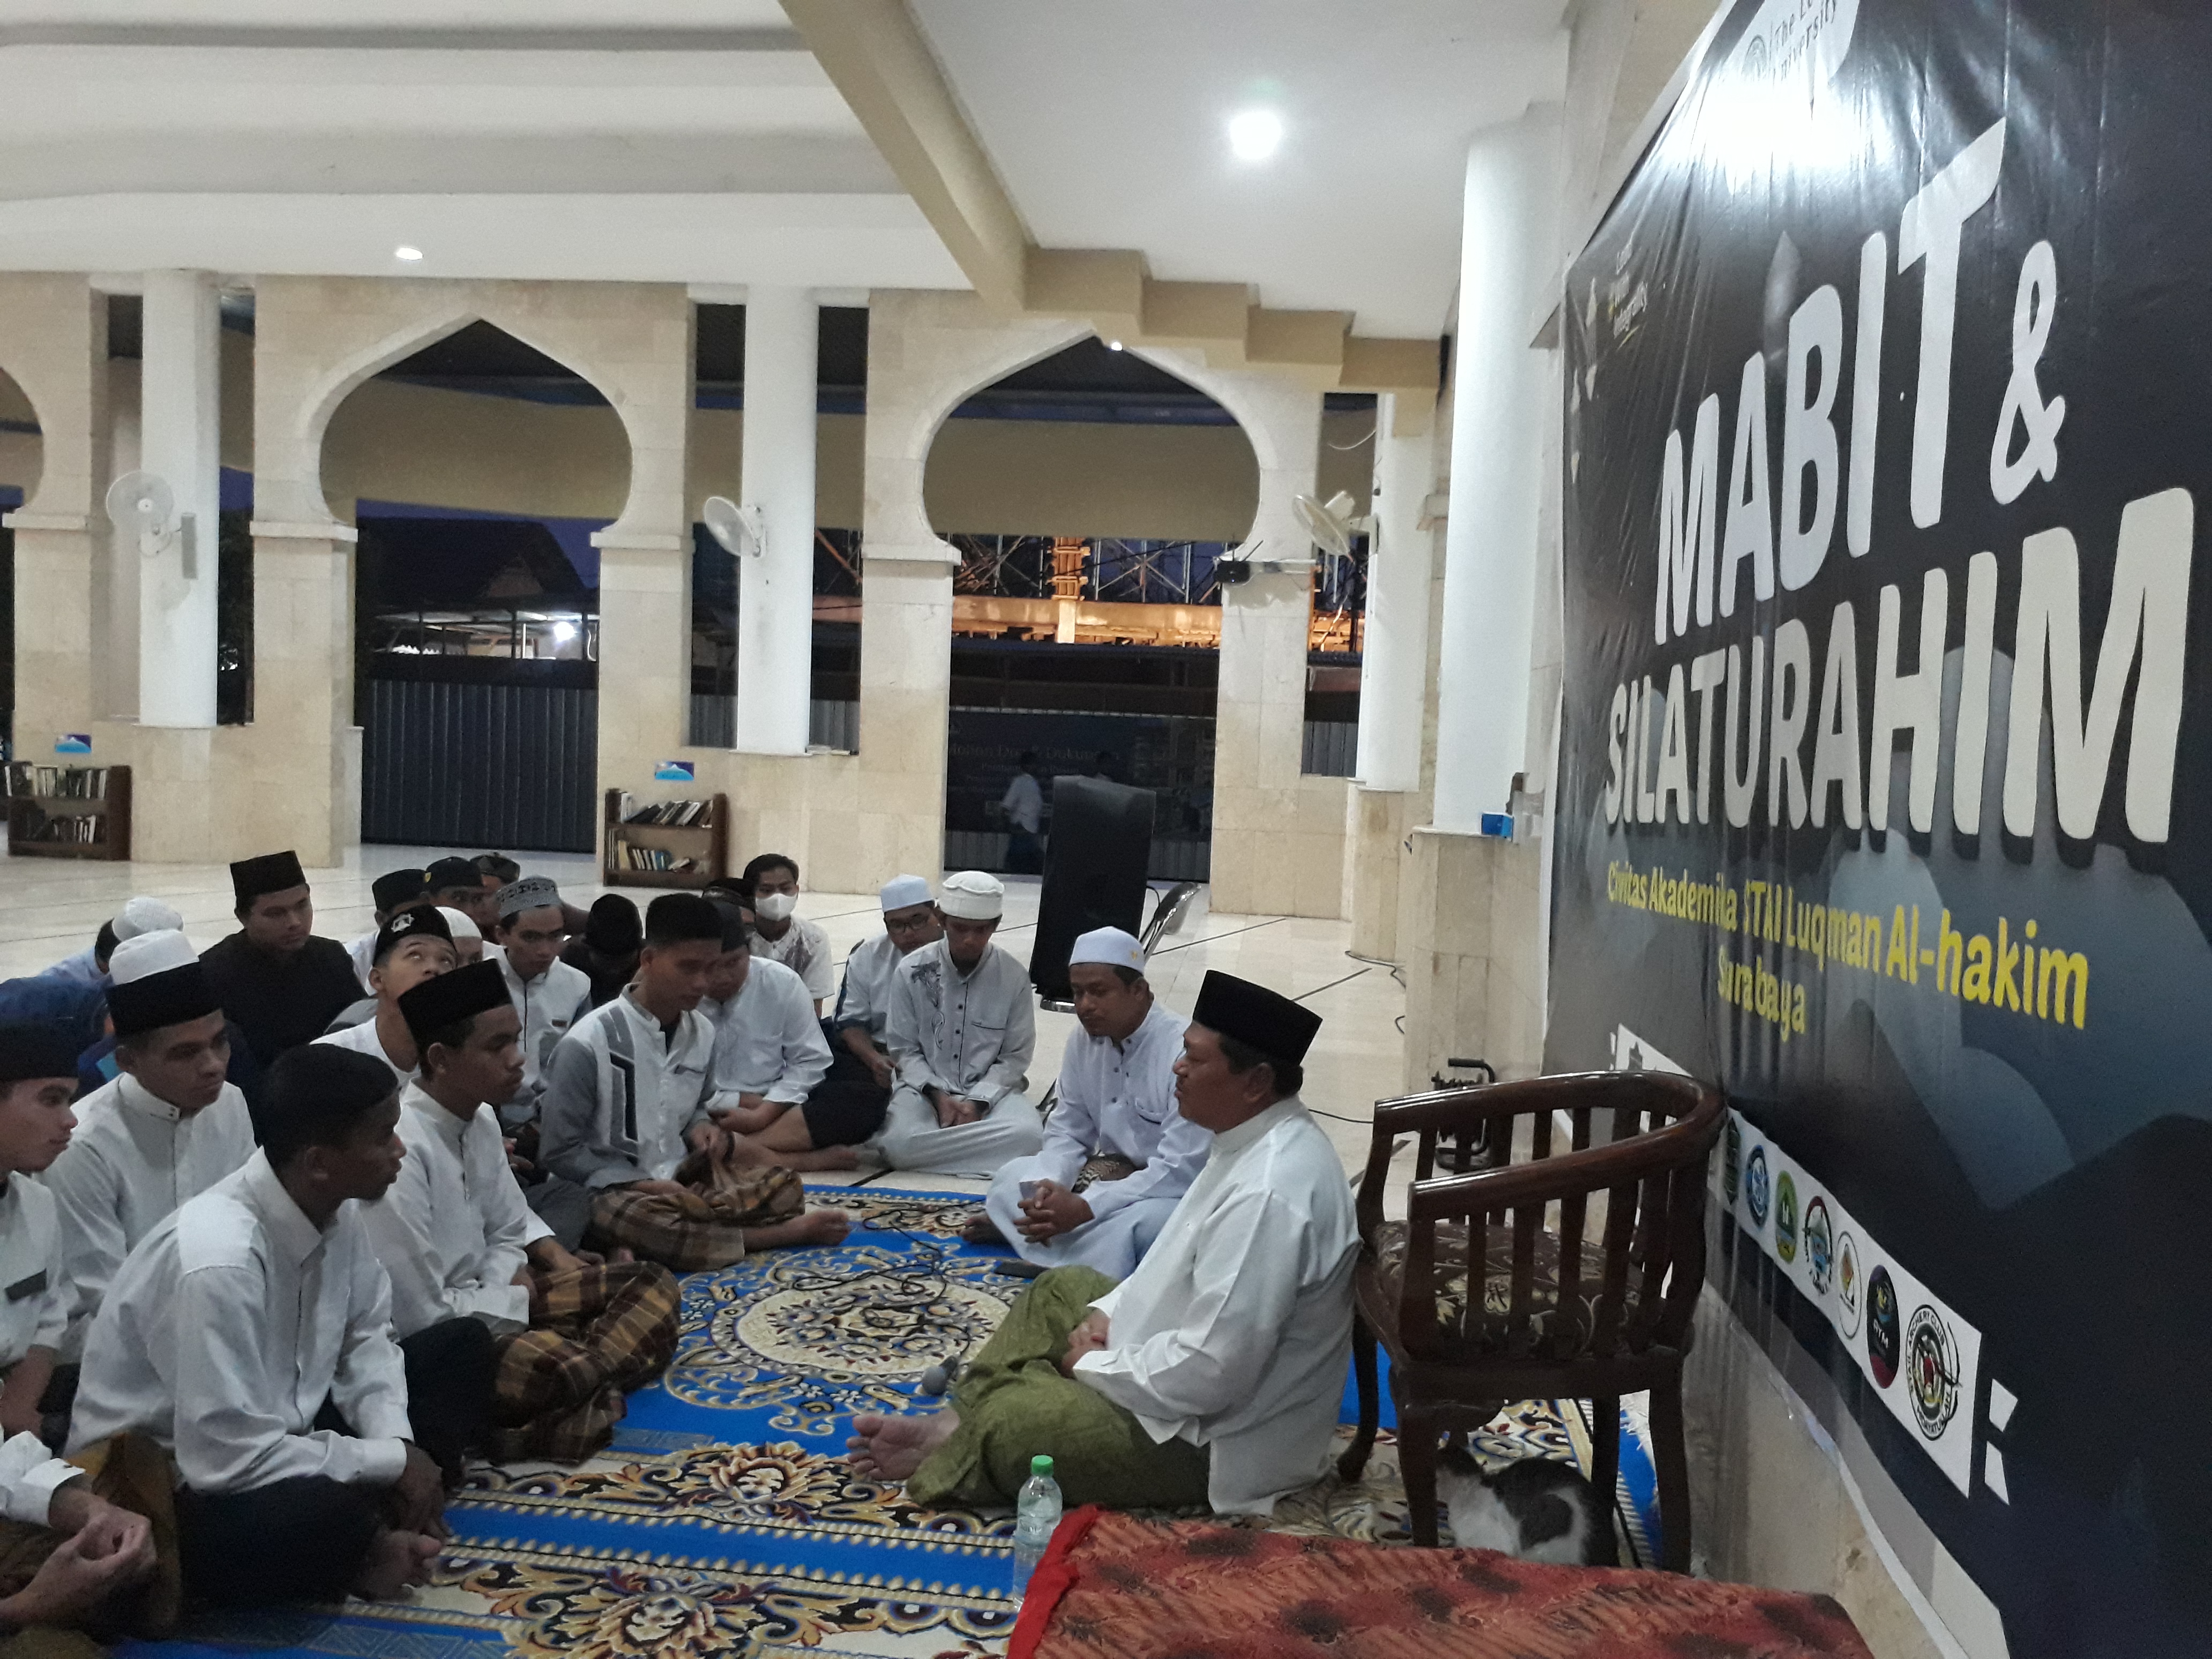 Sambut Hari Santri, Mahasiswa-Dosen STAIL Surabaya Mabit Bareng